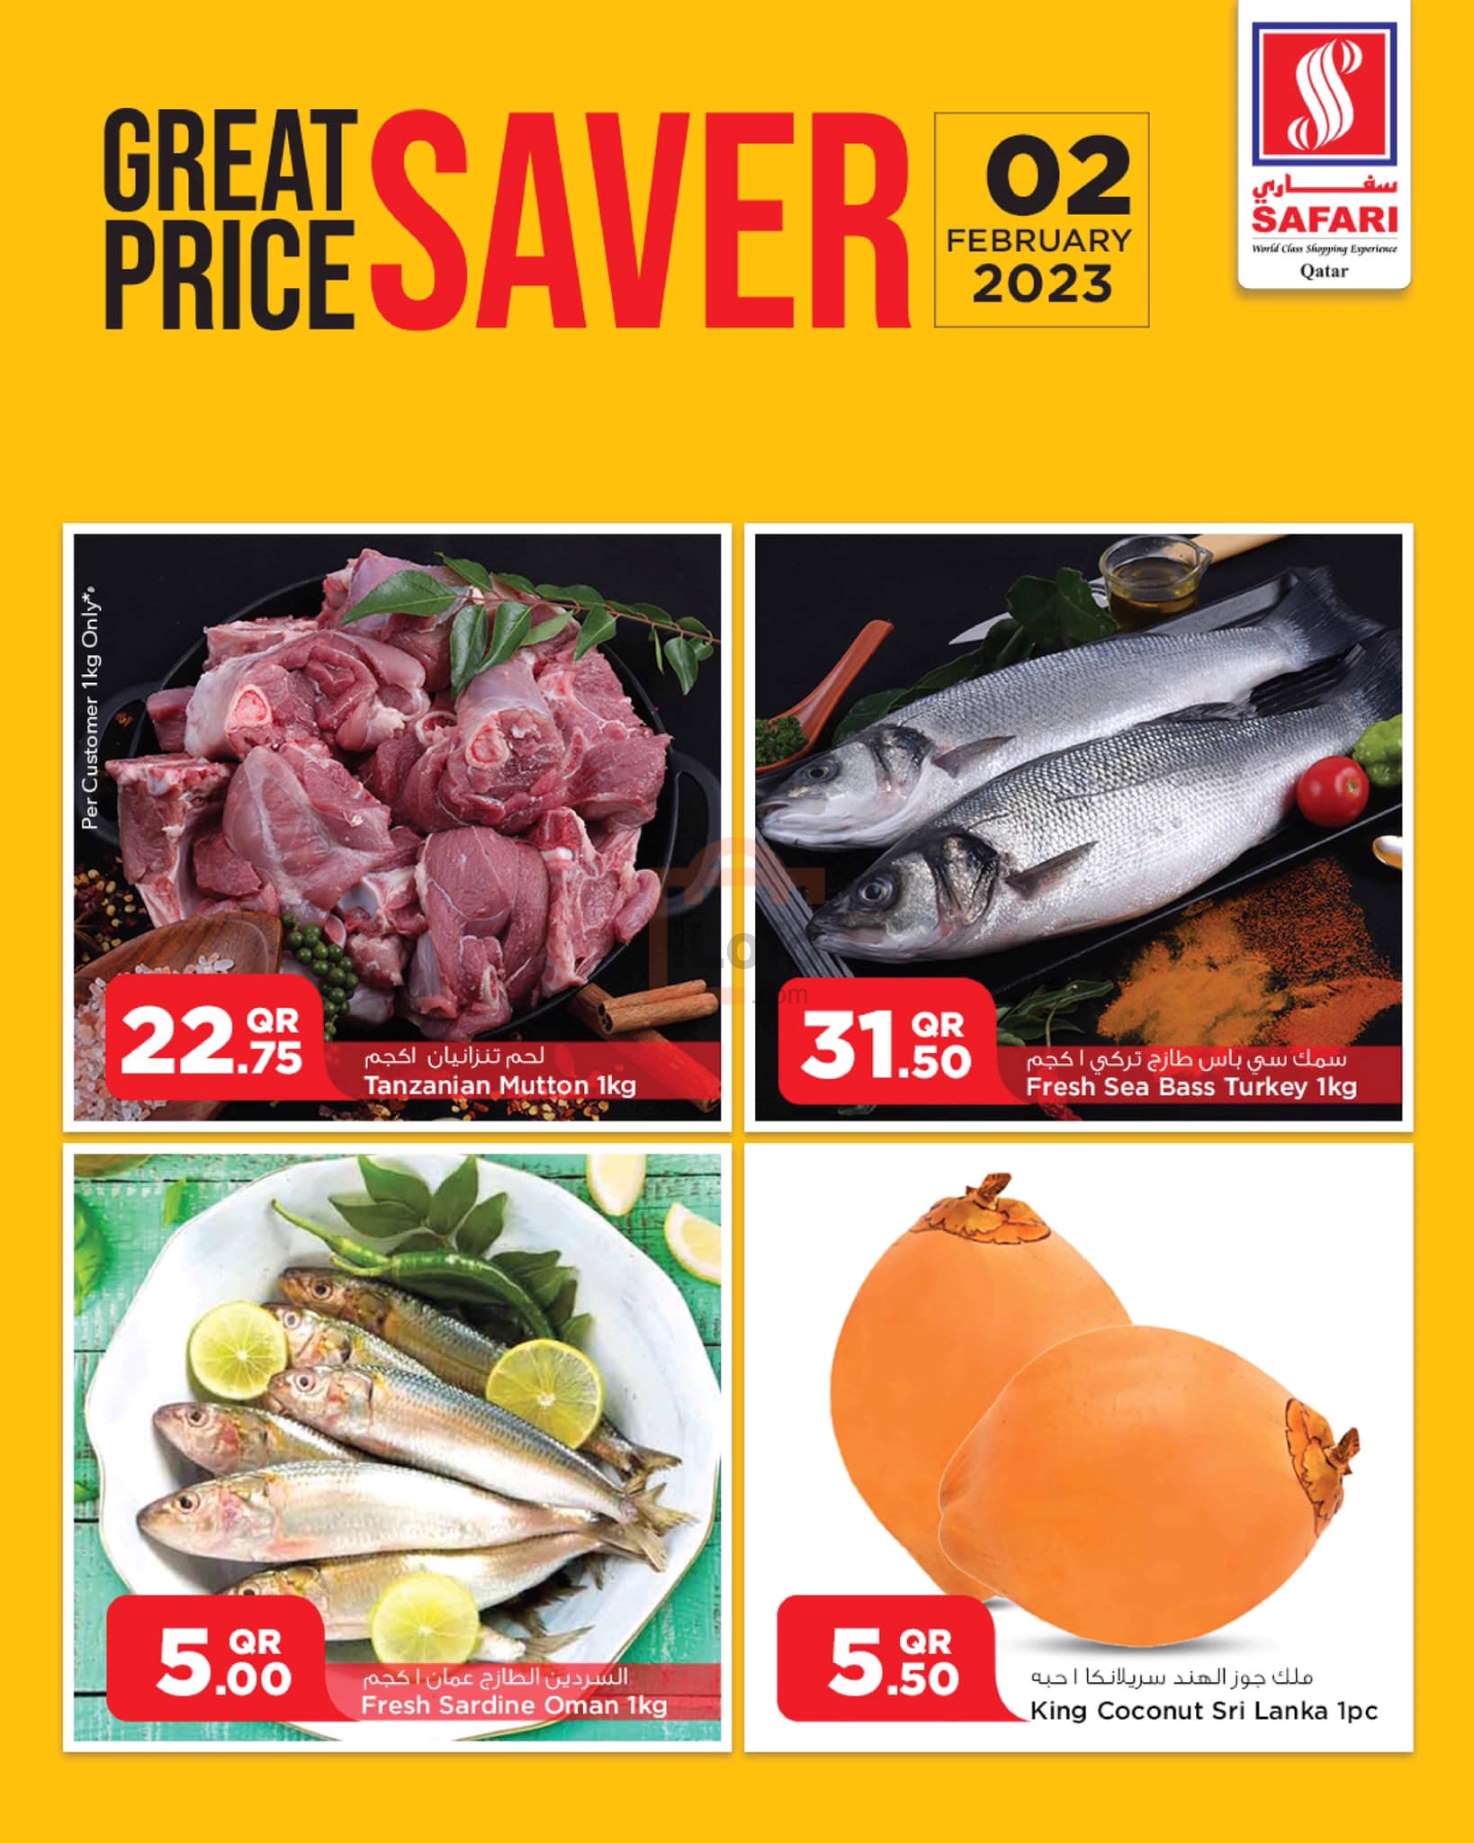 Page 2 at Great Price Saver at Safari Hyper Qatar